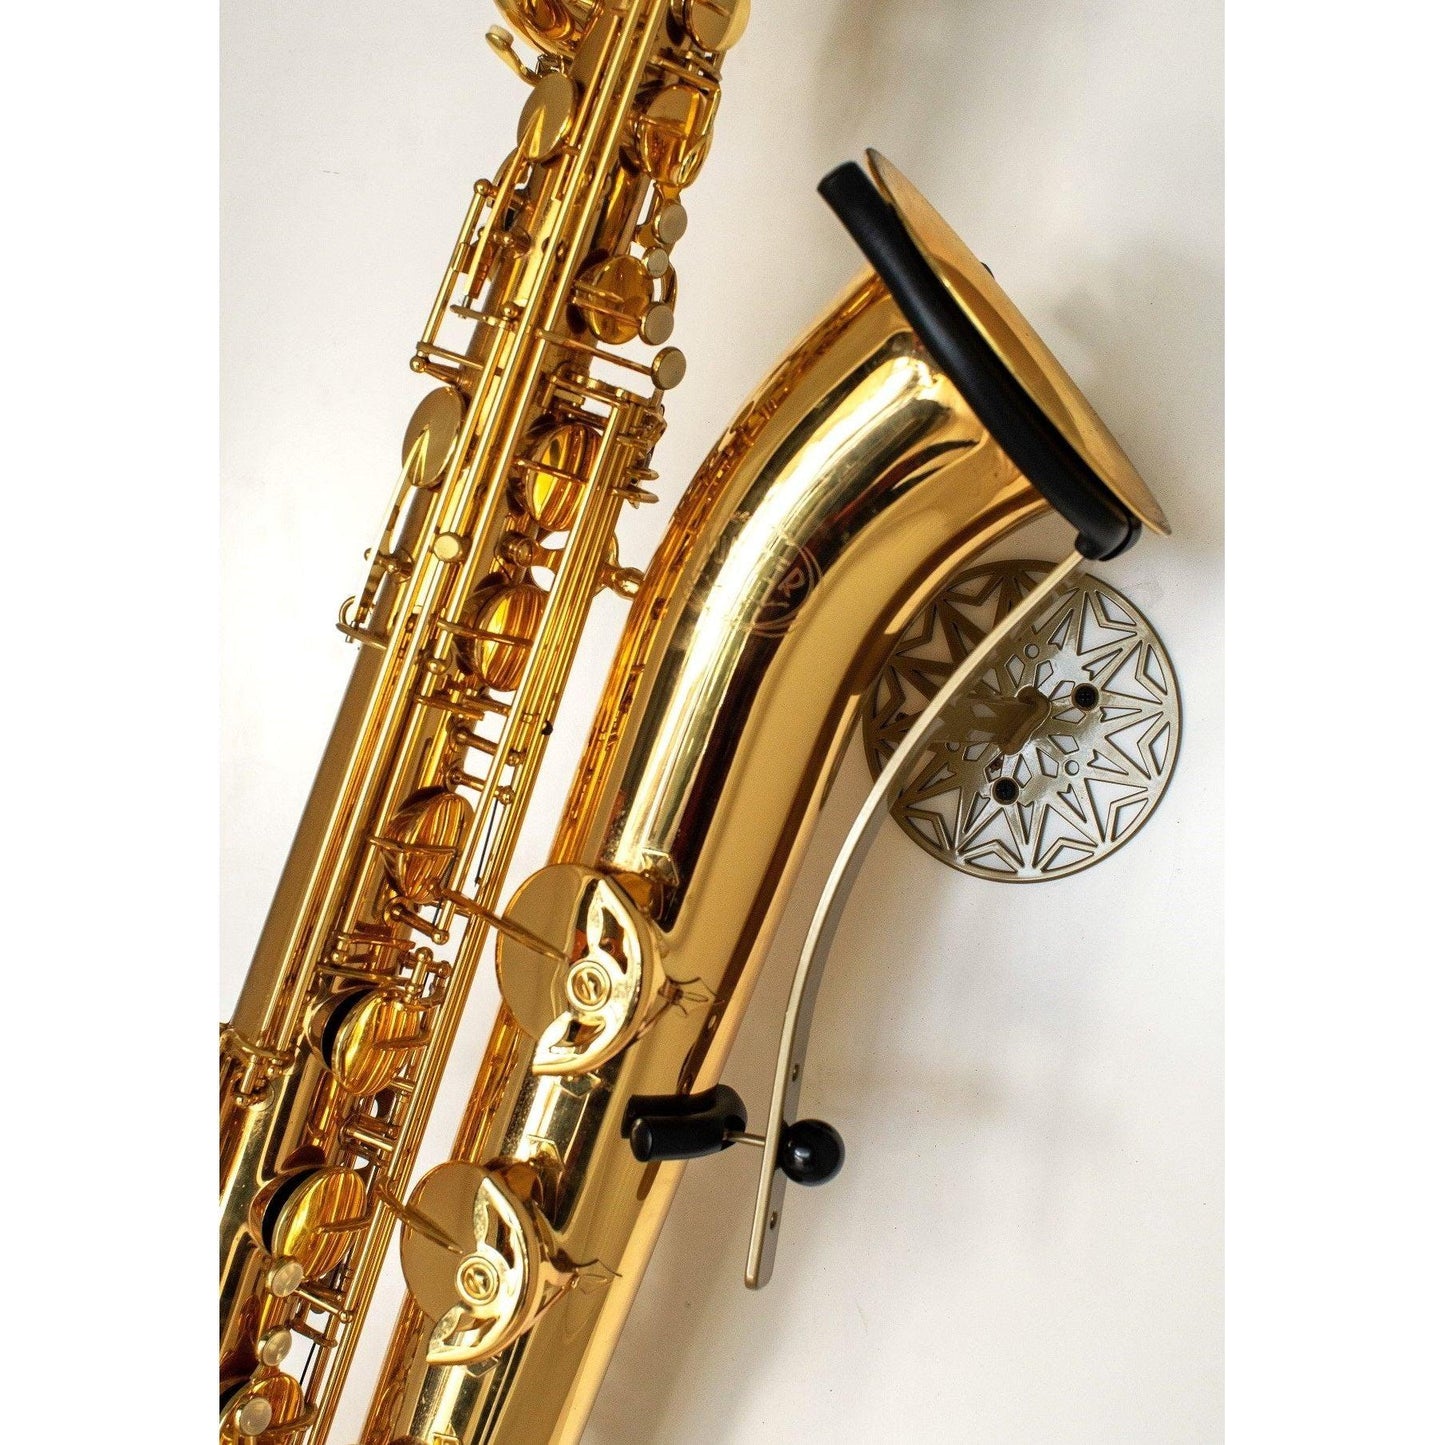  baritone saxophone wallmount  Samba on white wall by Locoparasaxo.com